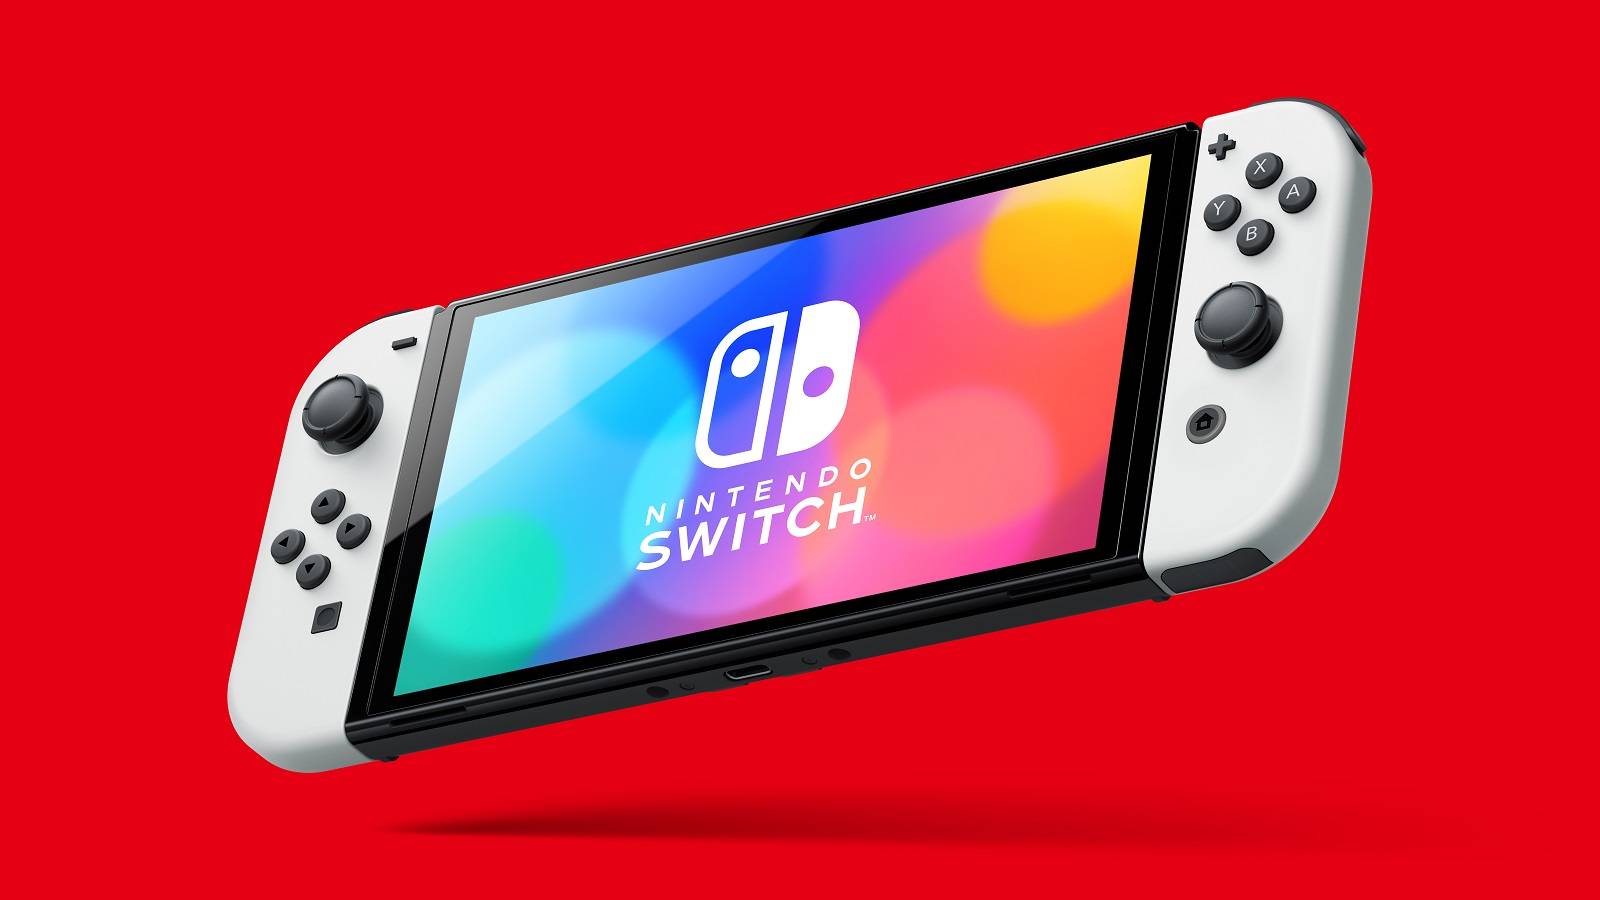 Через четыре года после запуска Nintendo может наконец дать Switch снижение цен